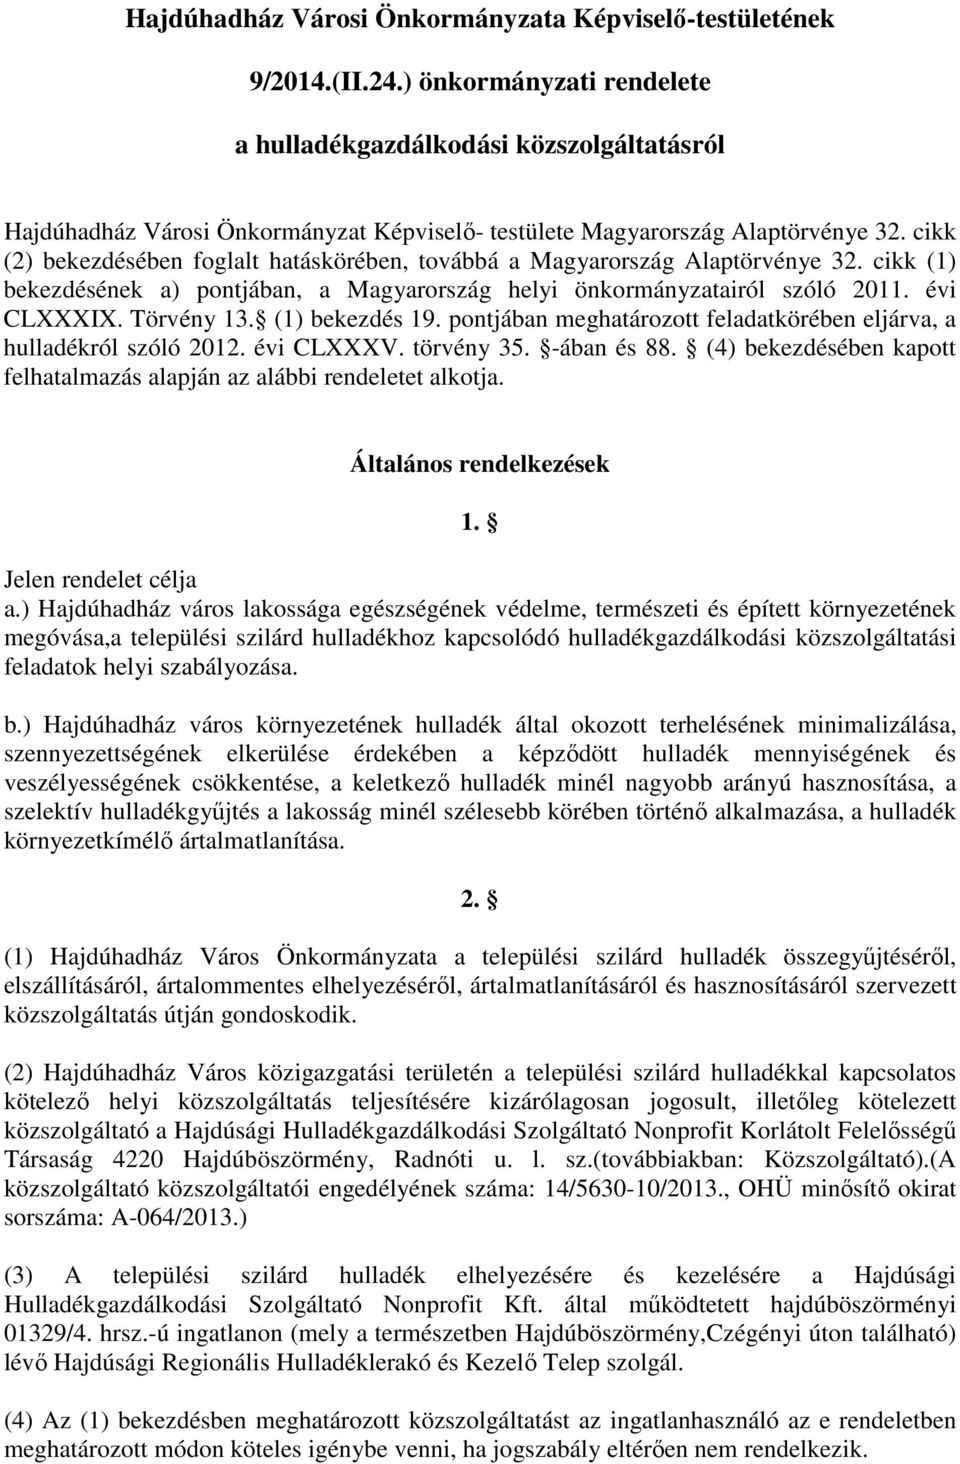 cikk (2) bekezdésében foglalt hatáskörében, továbbá a Magyarország Alaptörvénye 32. cikk (1) bekezdésének a) pontjában, a Magyarország helyi önkormányzatairól szóló 2011. évi CLXXXIX. Törvény 13.